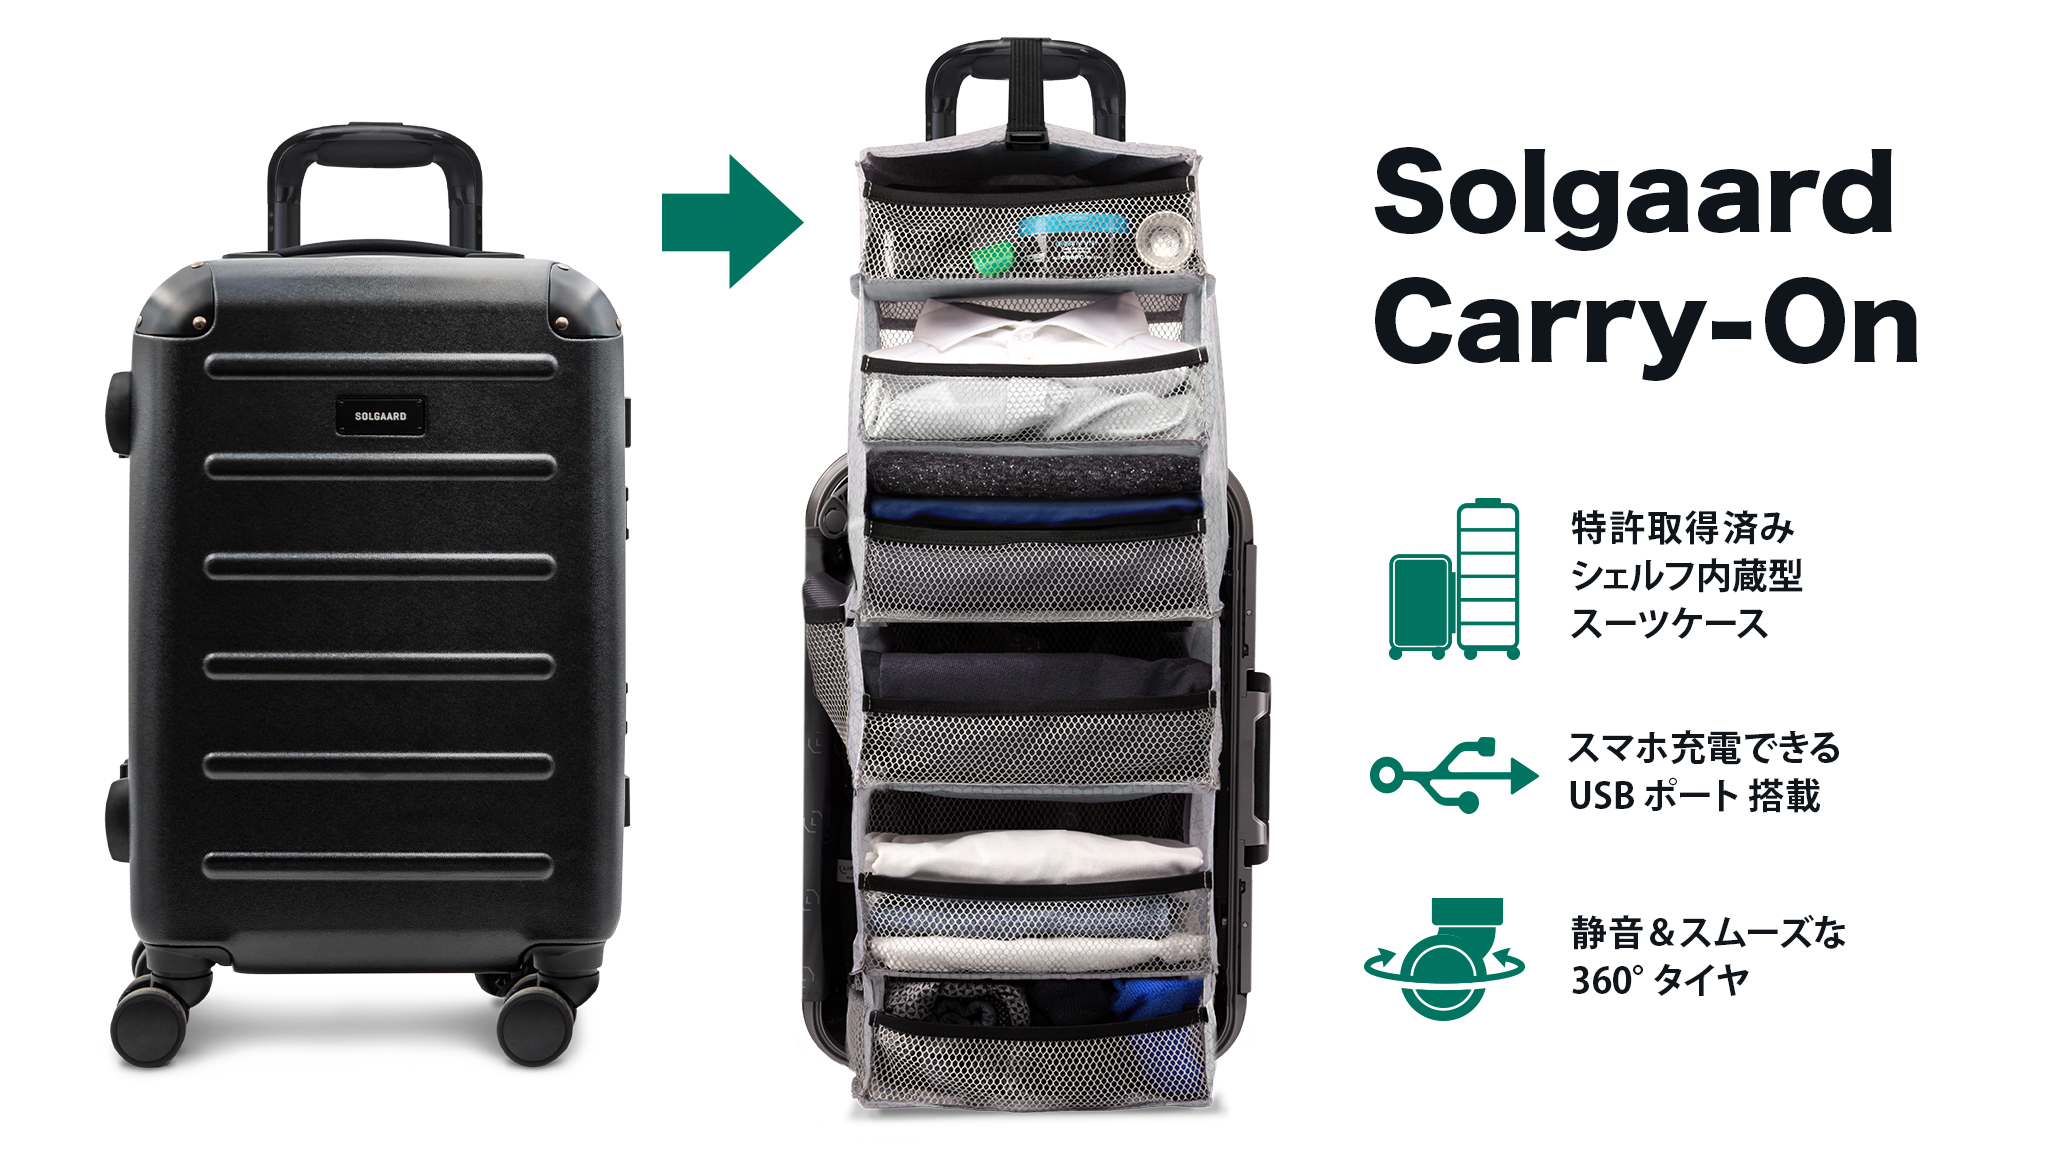 大幅値下げランキング 機内持込 SOLGAARD Carry on 時短スーツケース